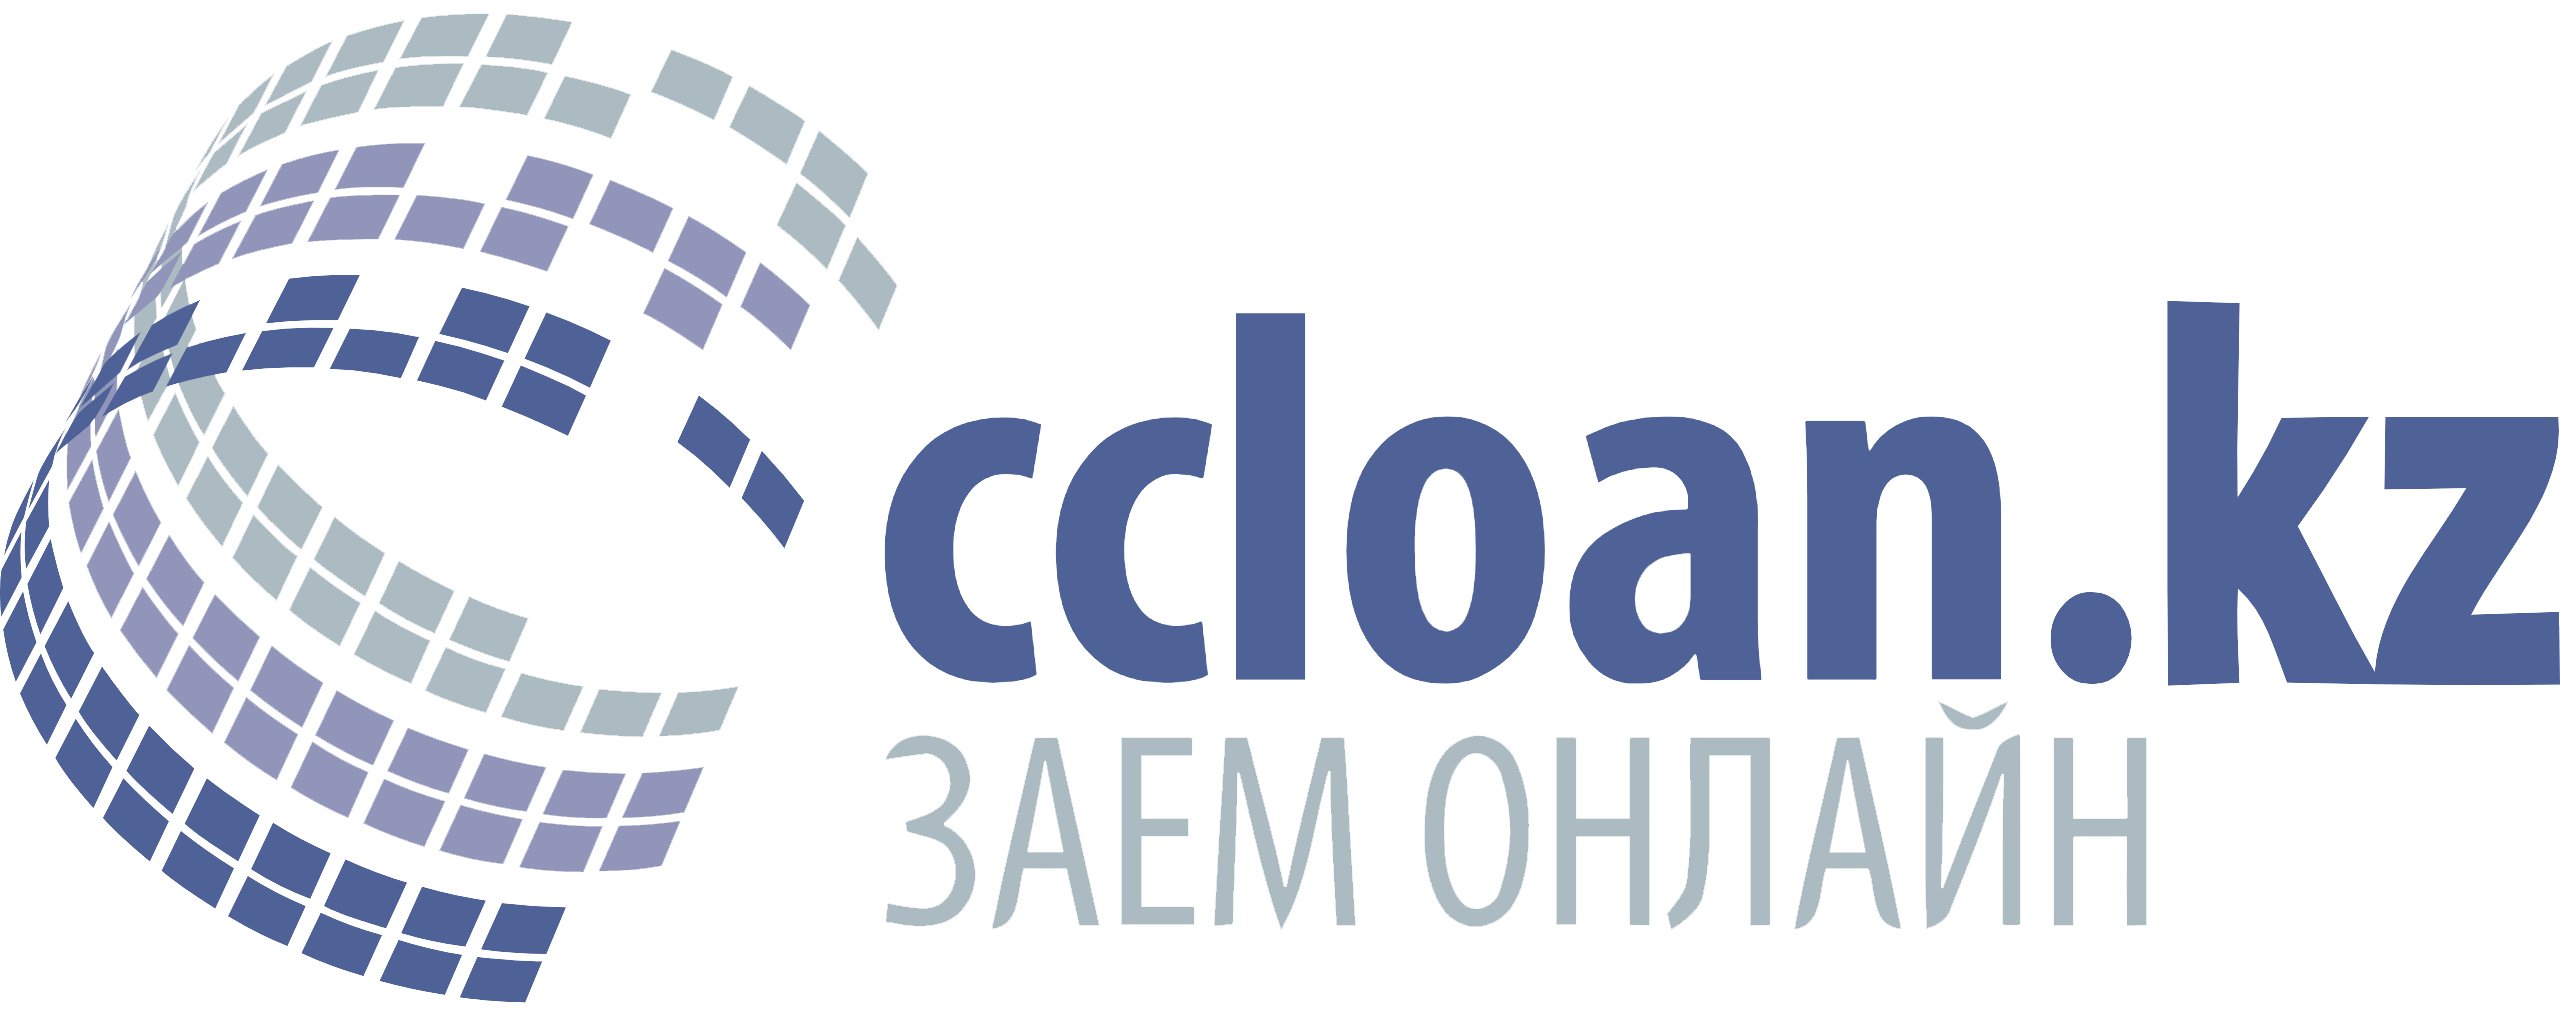 Логотип Микрофинансовой организации Ccloan